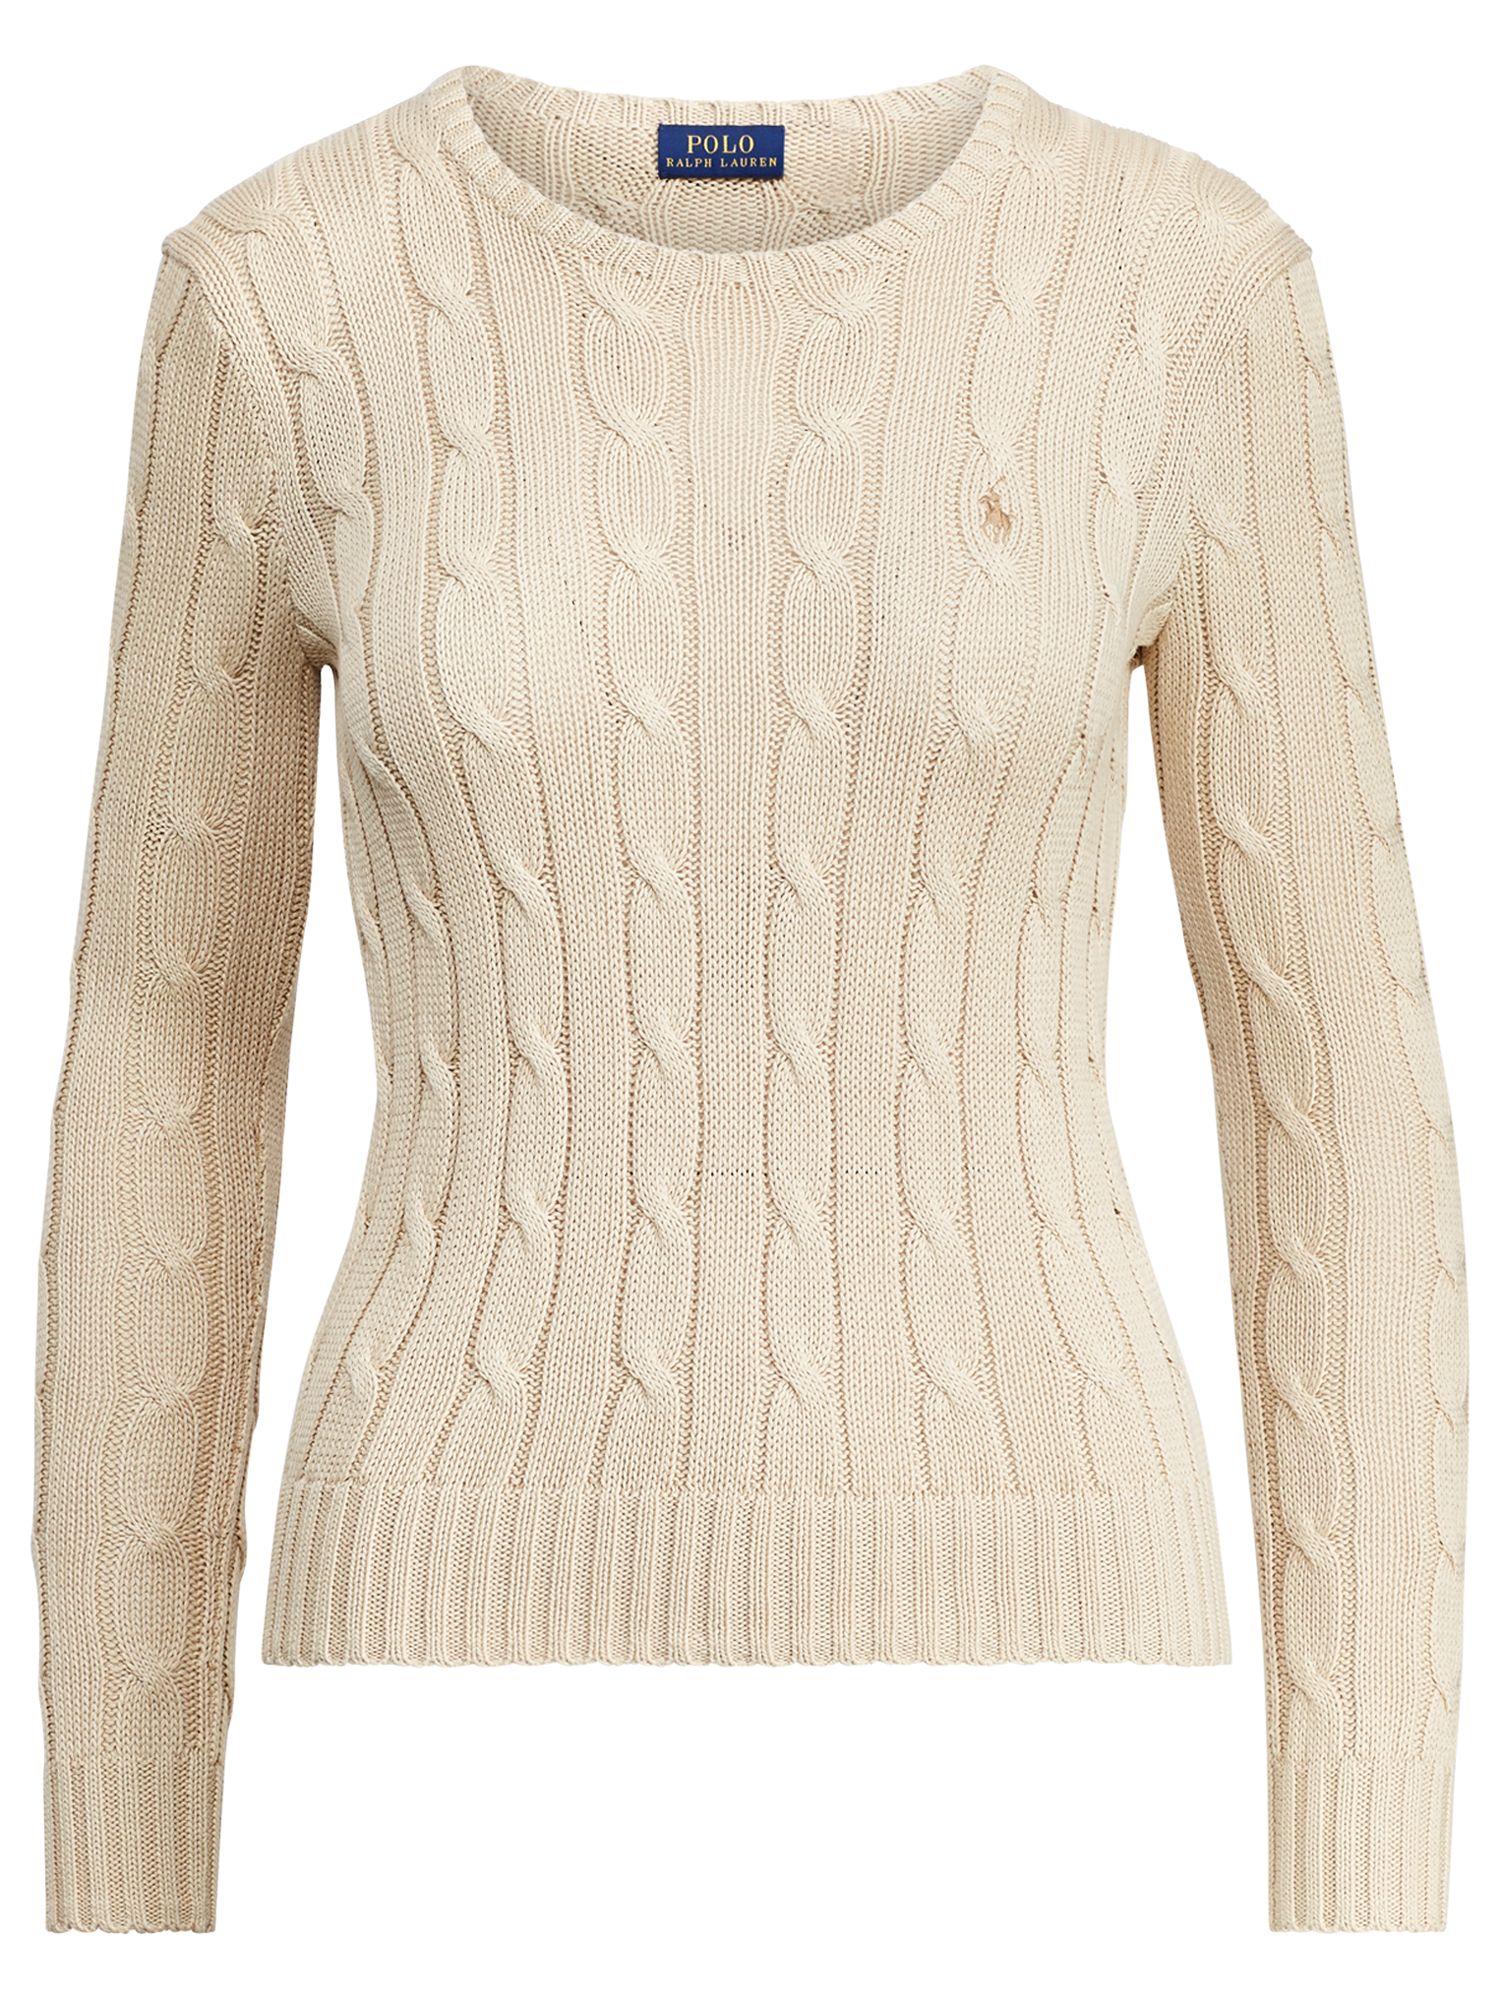 polo ralph lauren julianna knitted jumper